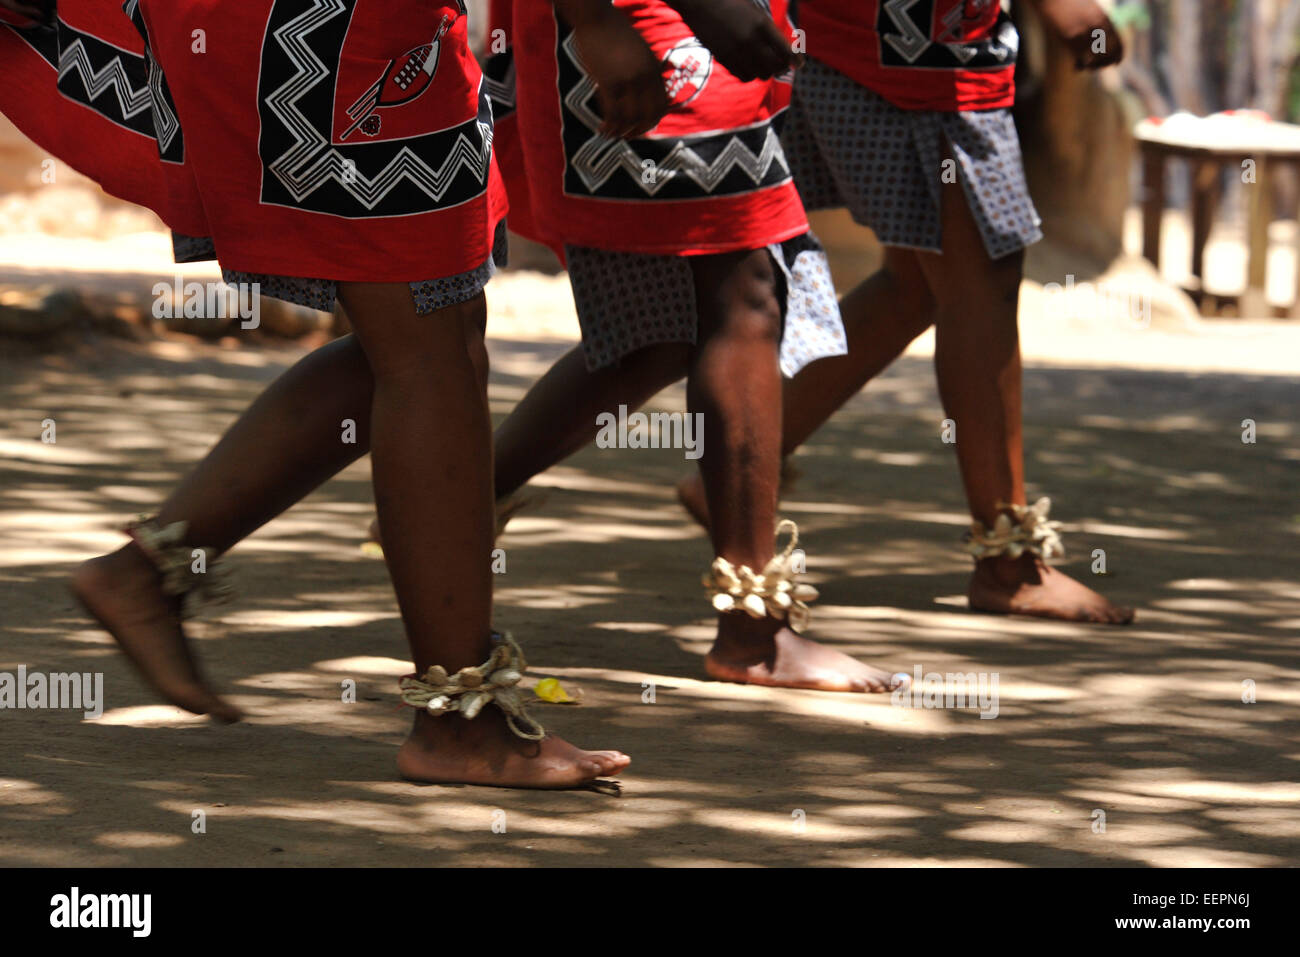 Movimiento sincronizado de las piernas y los pies de las mujeres swazi tres bailarines durante el espectáculo de danza tradicional para los turistas,Matsamo aldea cultural, Suazilandia Foto de stock